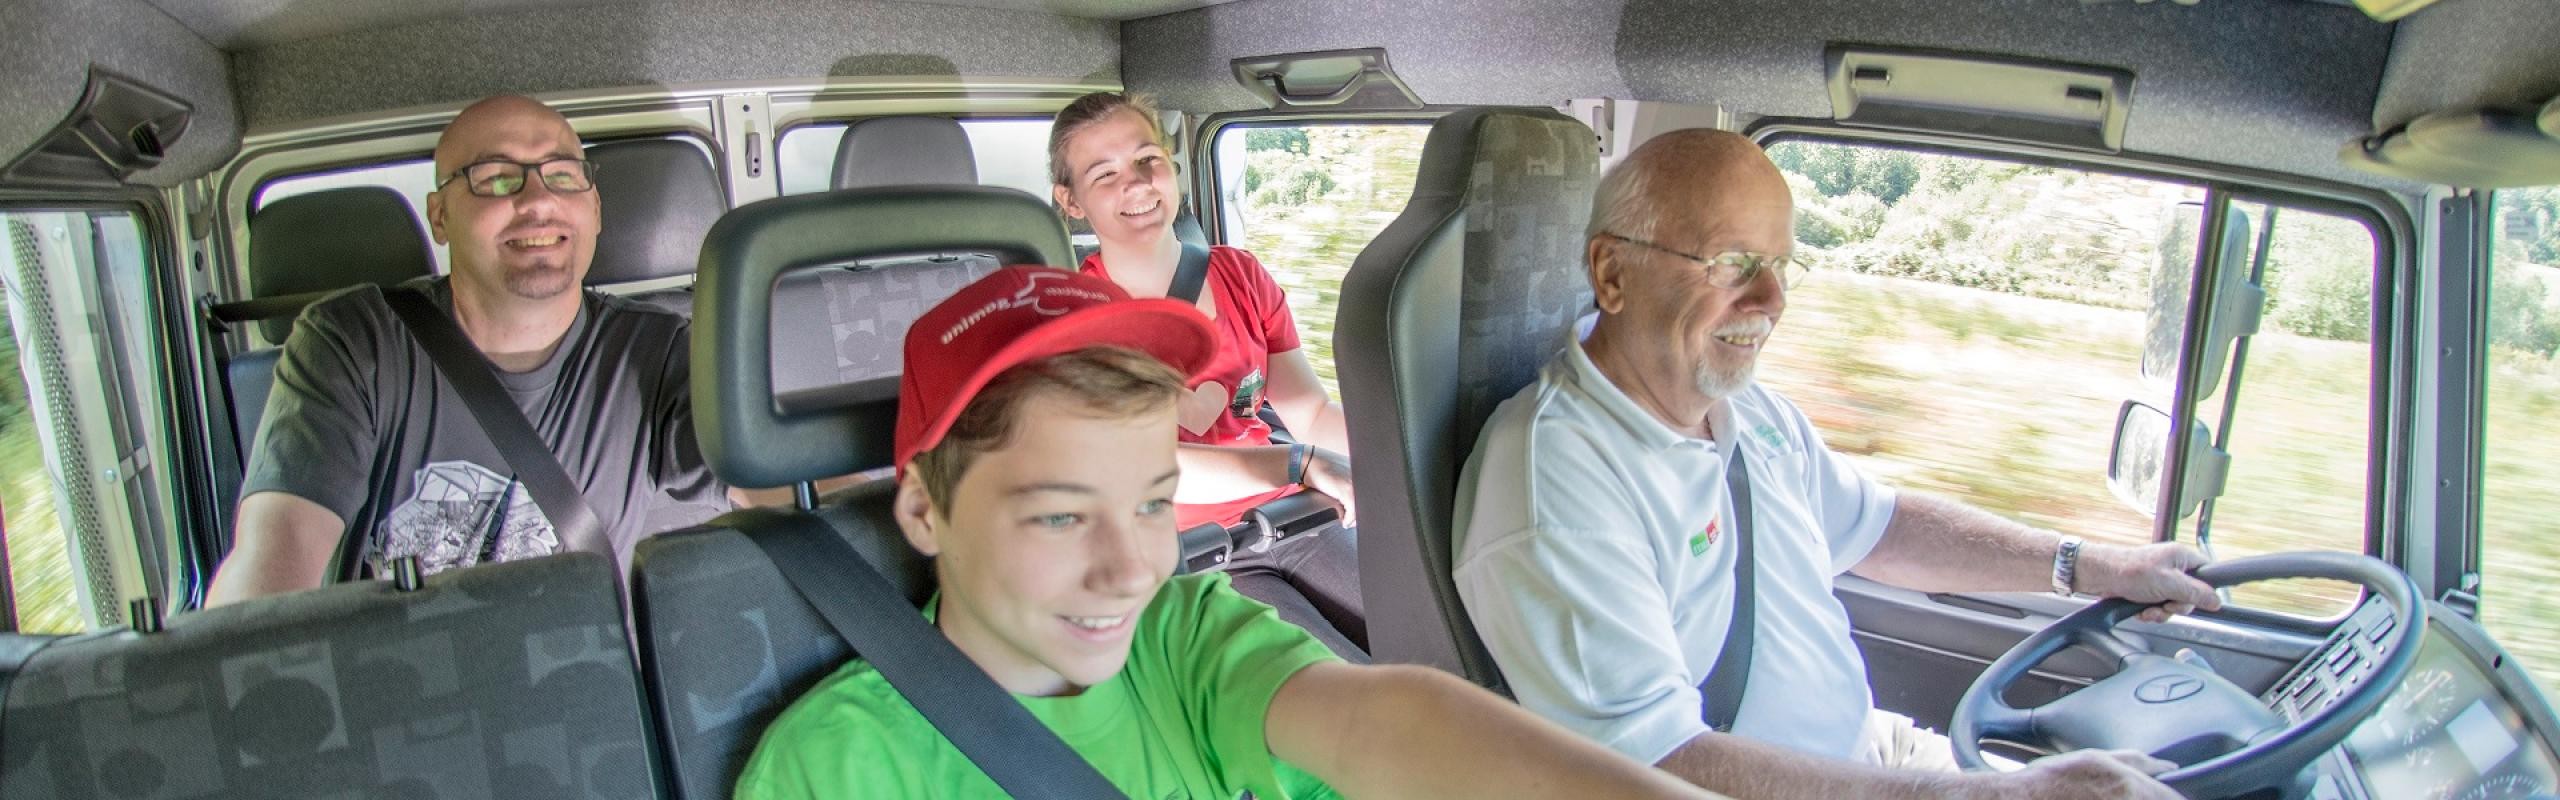 Das Bild zeigt vier Personen bei der Mitfahrt in einem Unimog. Ein Junge mit grünen T-Shirt und rotem Cap zeigt den Daumen hoch